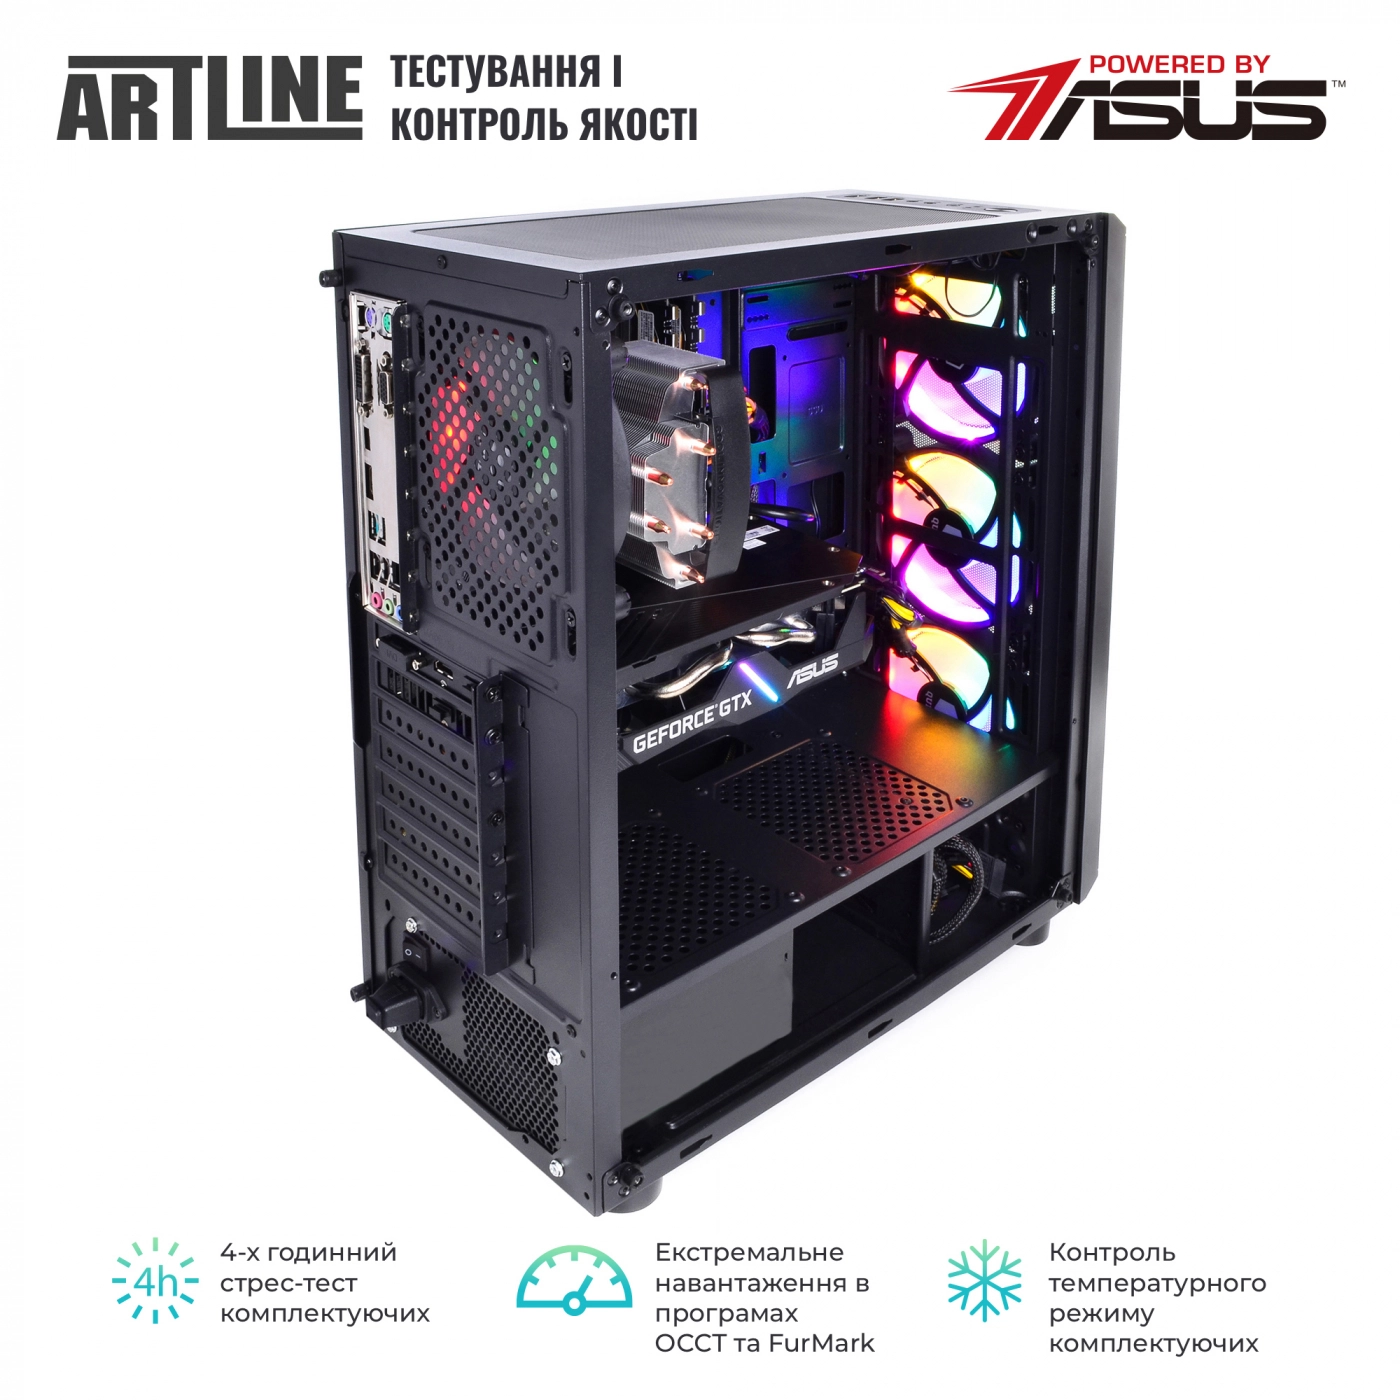 Купить Компьютер ARTLINE Gaming X47v44 - фото 8